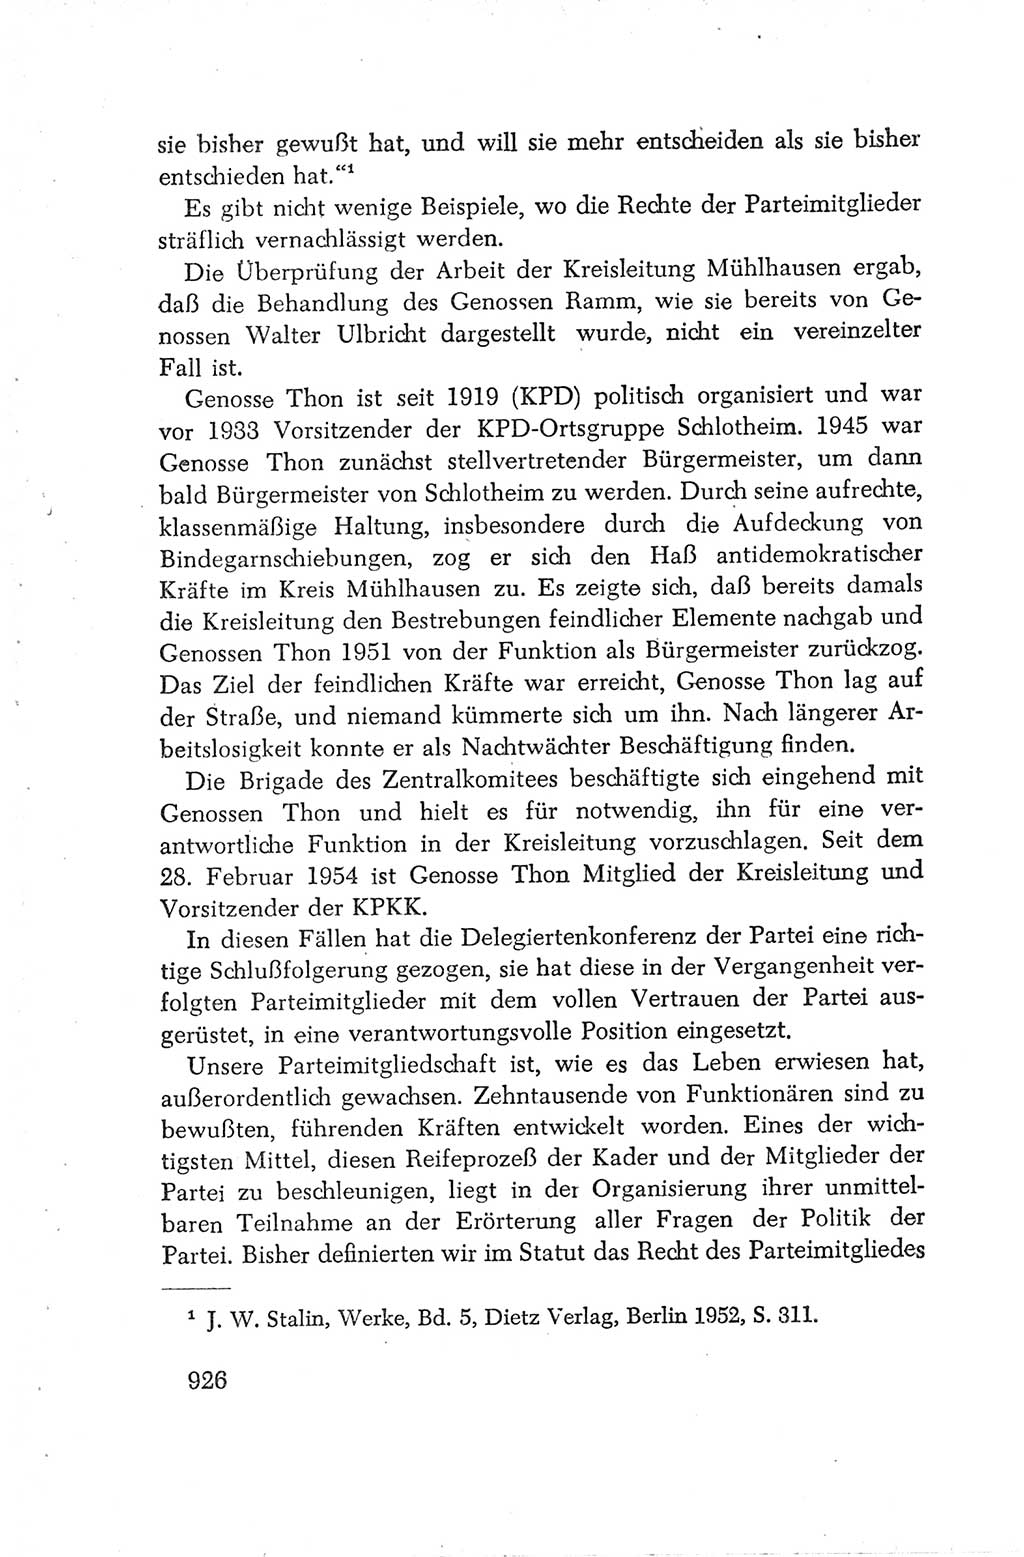 Protokoll der Verhandlungen des Ⅳ. Parteitages der Sozialistischen Einheitspartei Deutschlands (SED) [Deutsche Demokratische Republik (DDR)] 1954, Seite 926